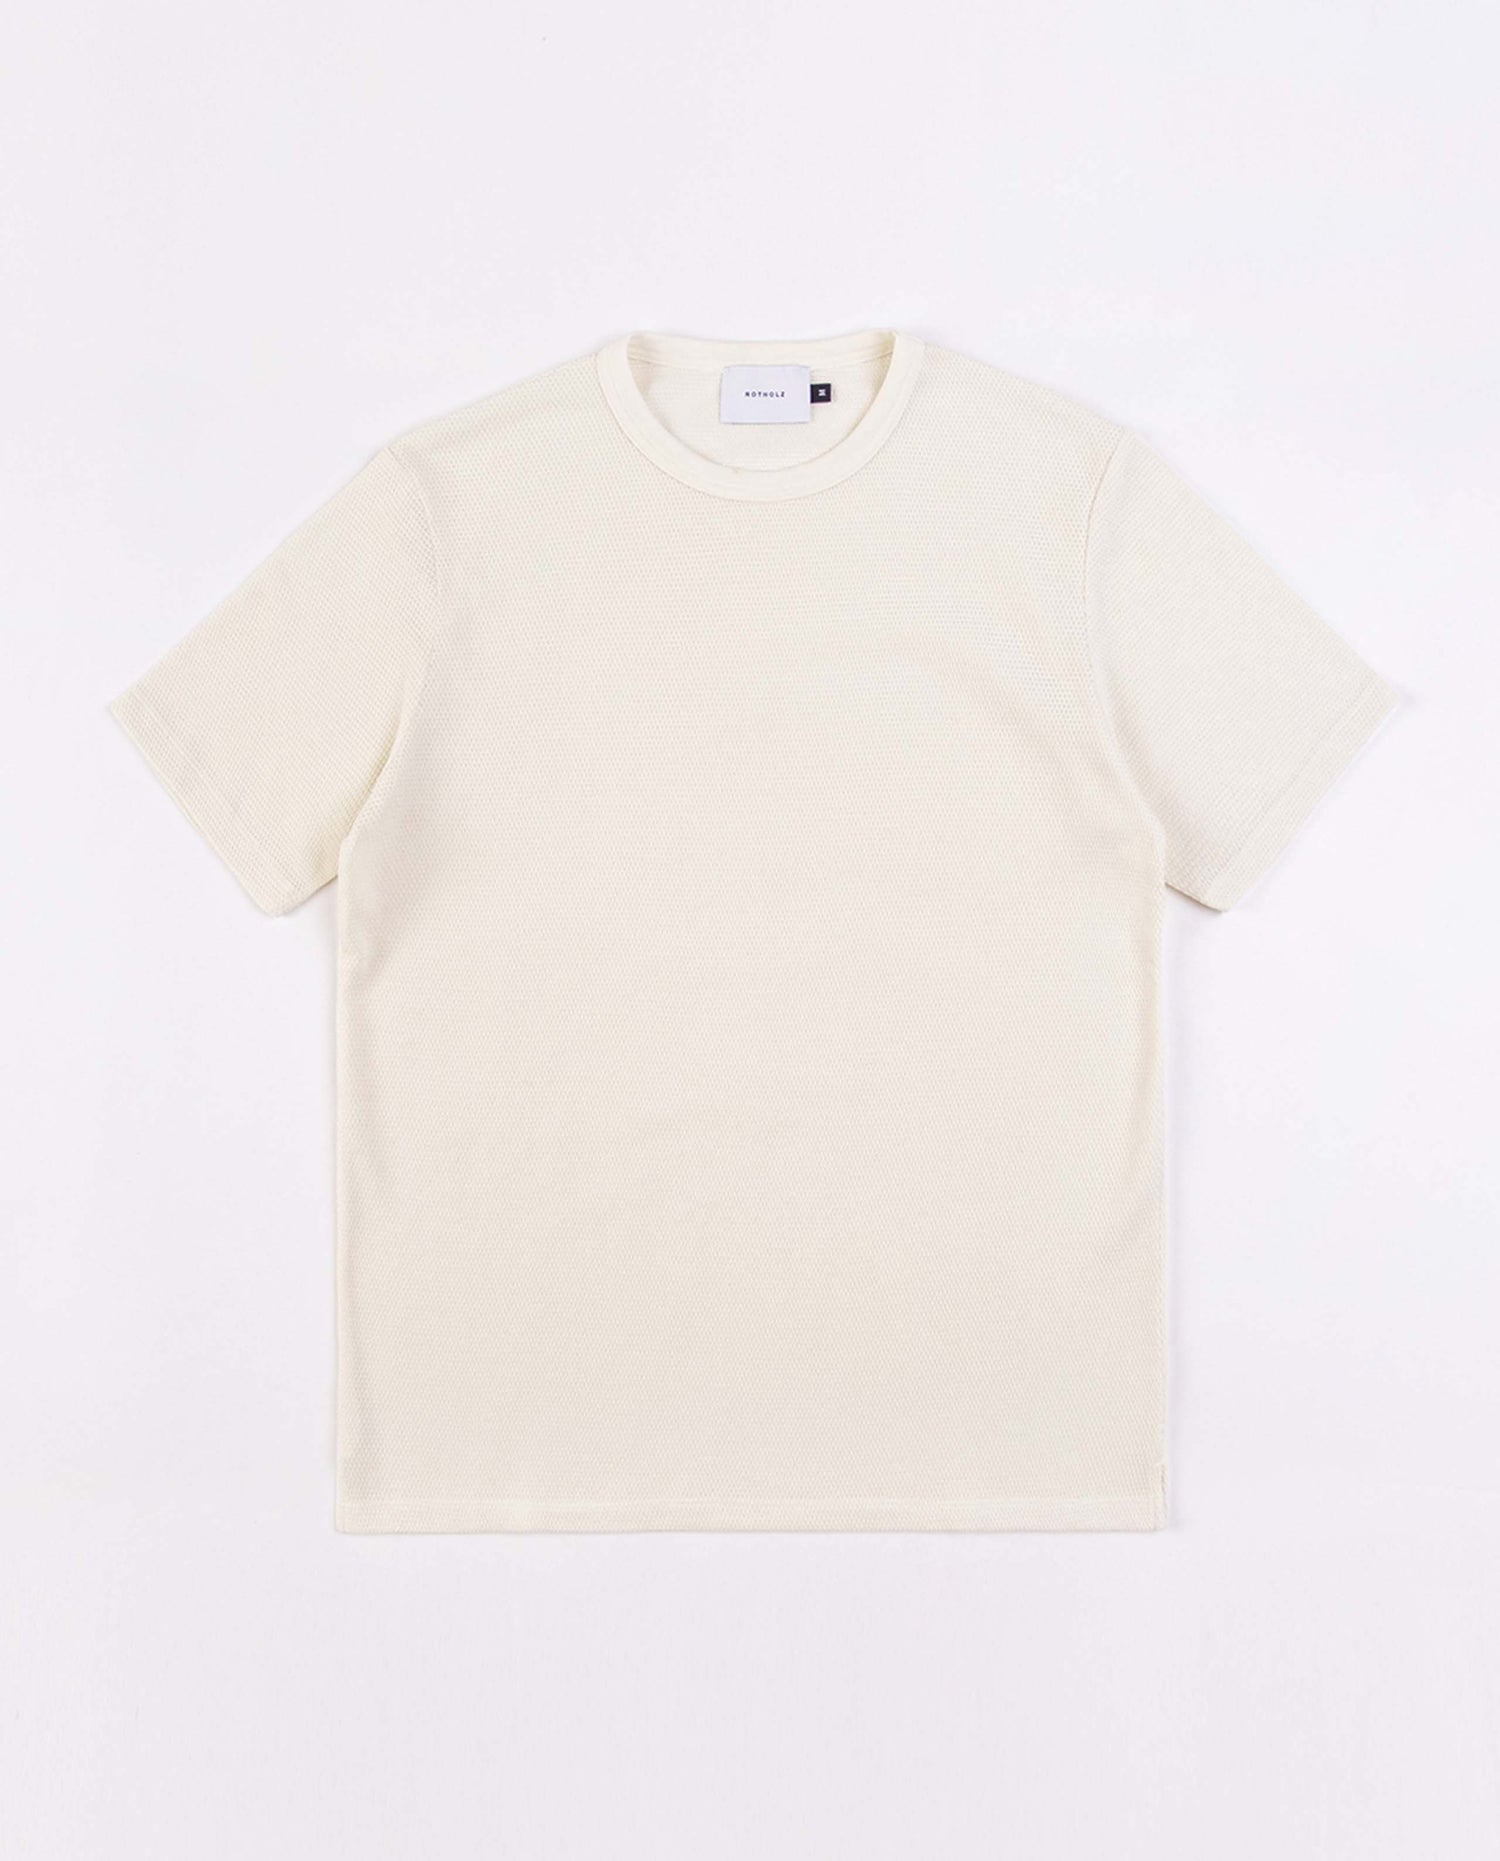 marché commun rotholz t-shirt homme manches courtes coton biologique gaufré écru